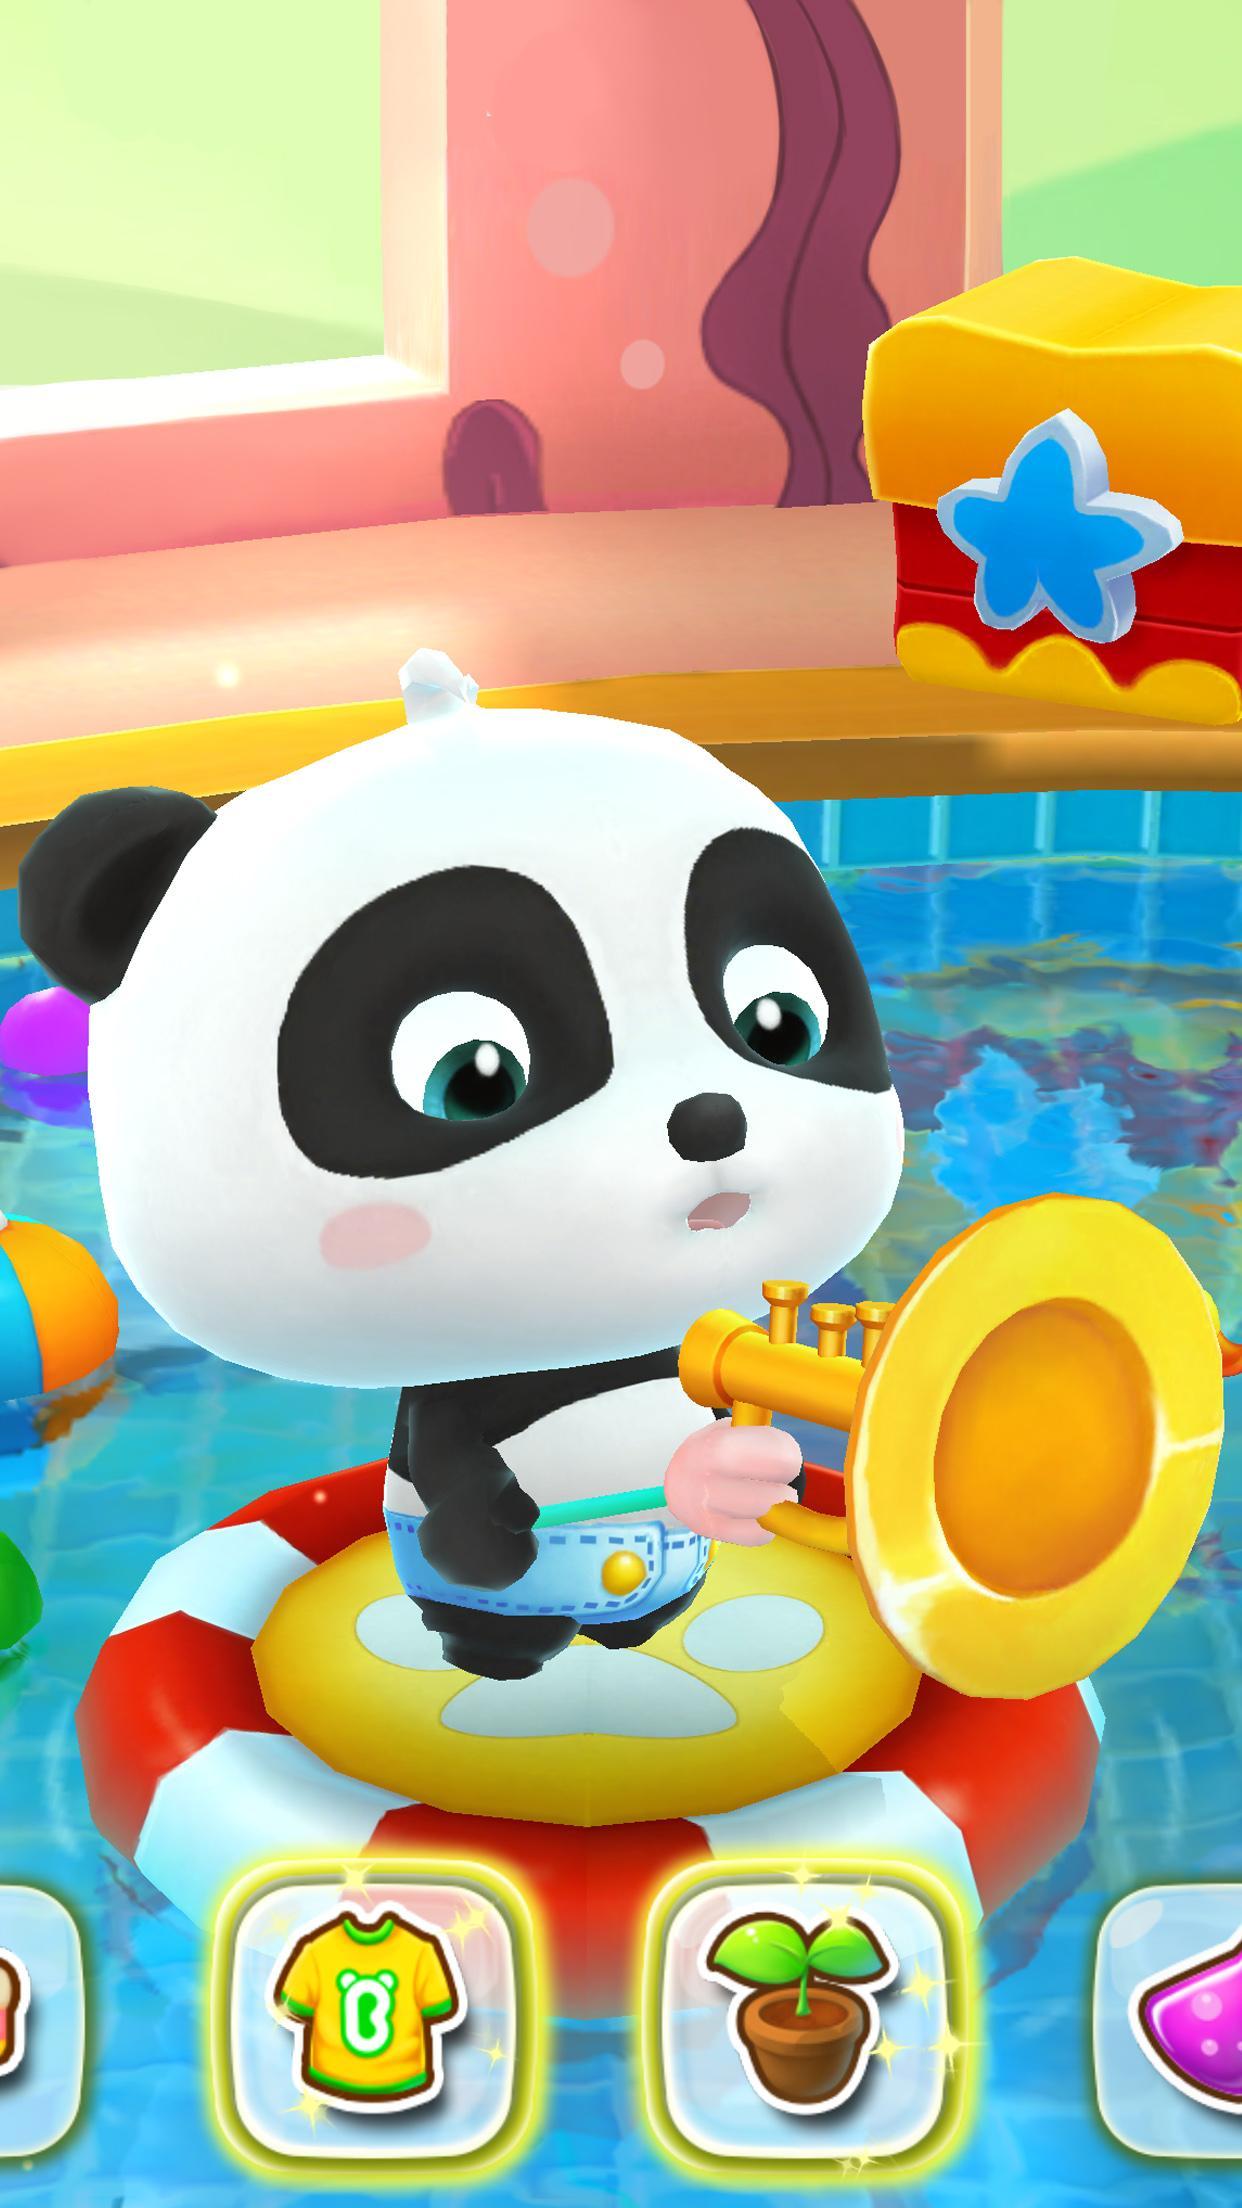 Talking Baby Panda - Kids Game 8.43.00.10 Screenshot 10